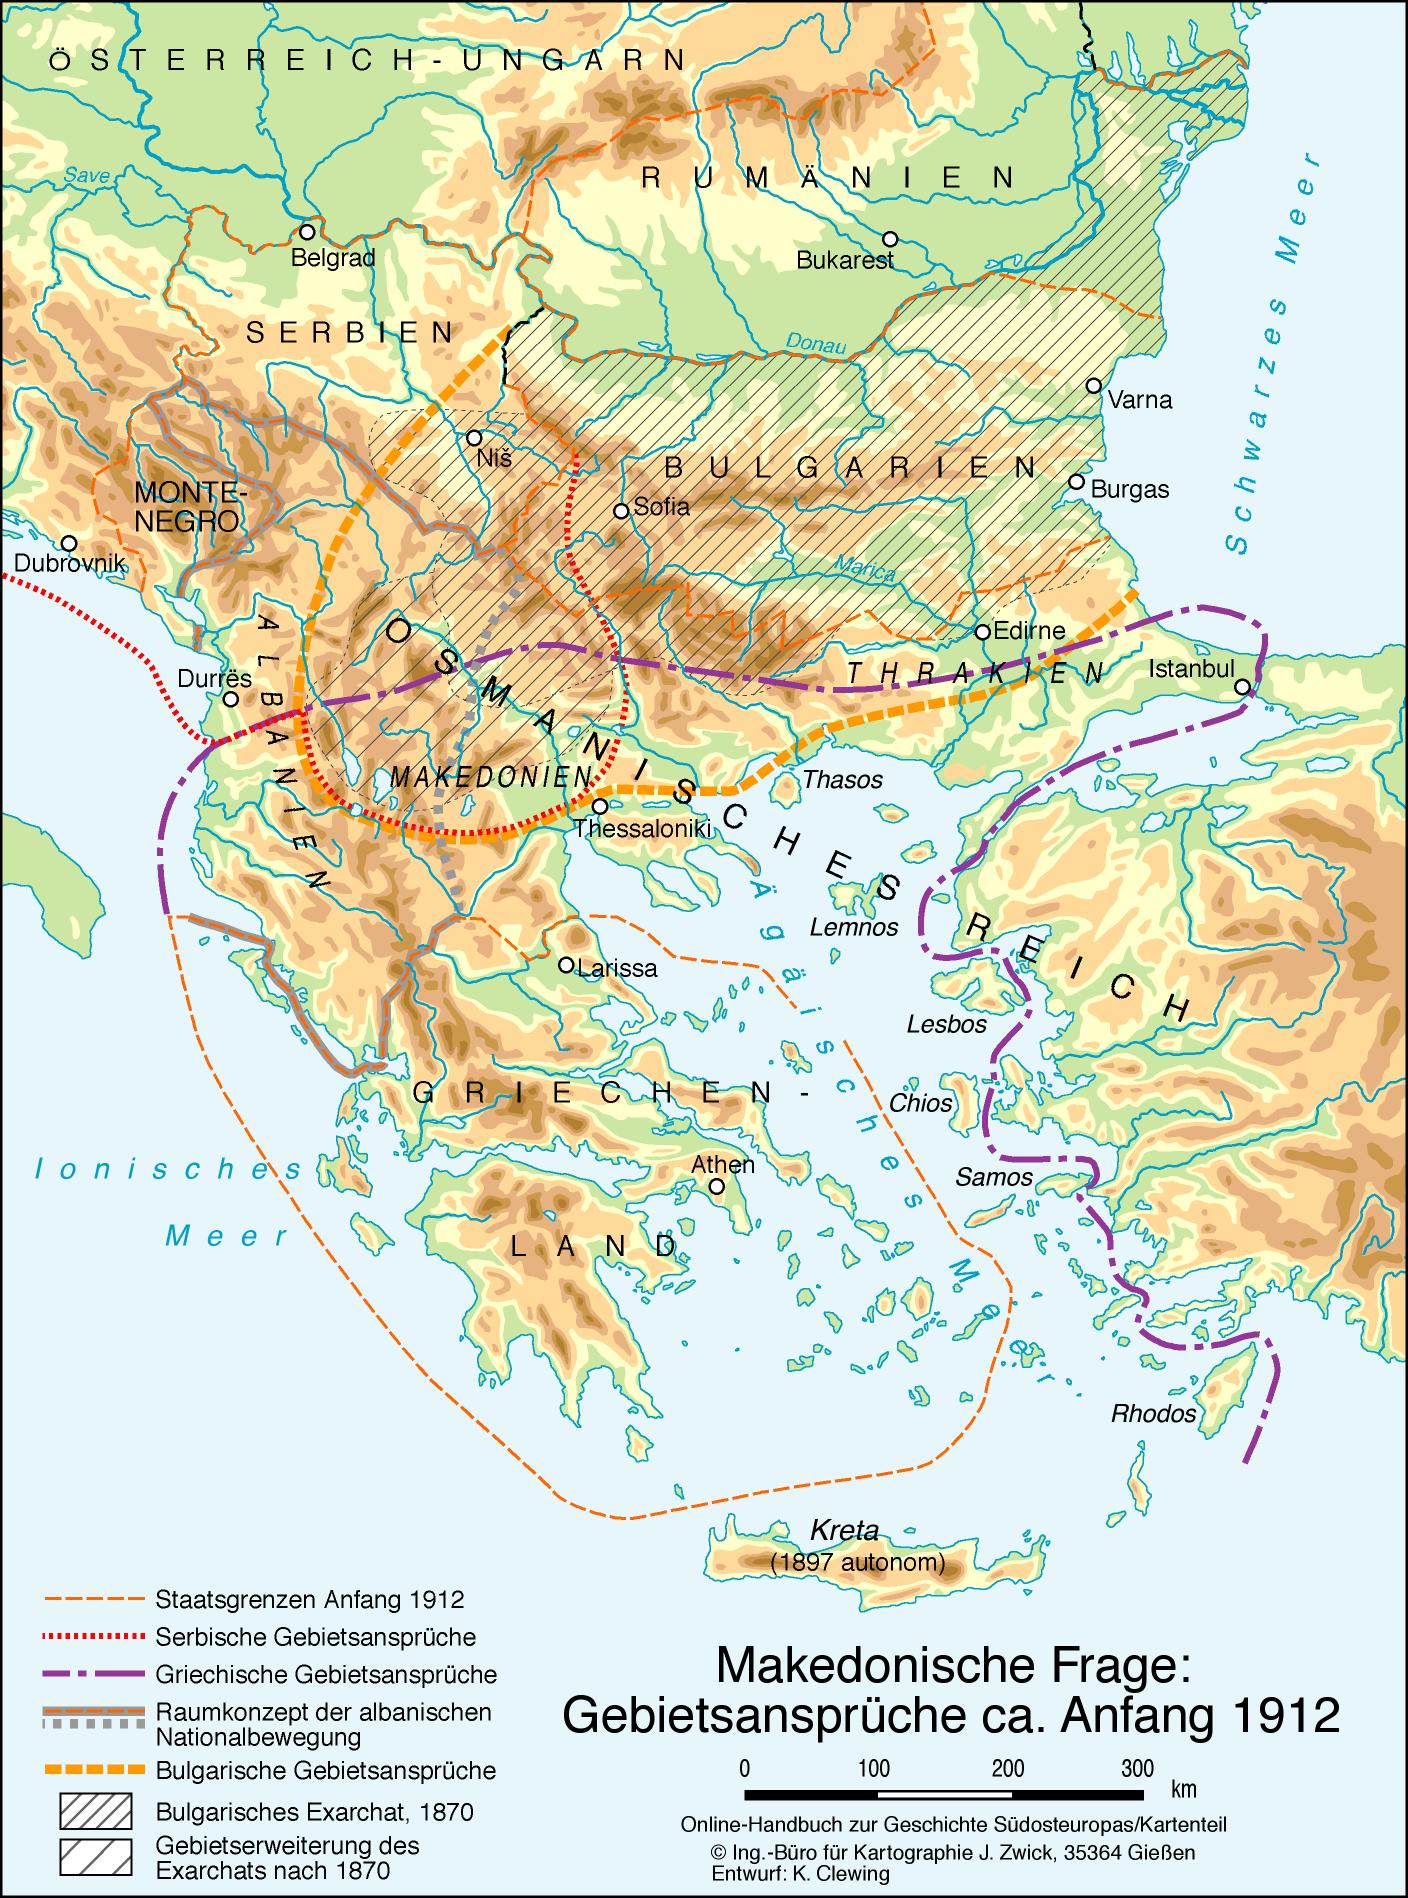 Makedonische Frage: Gebietsansprüche ca. Anfang 1912